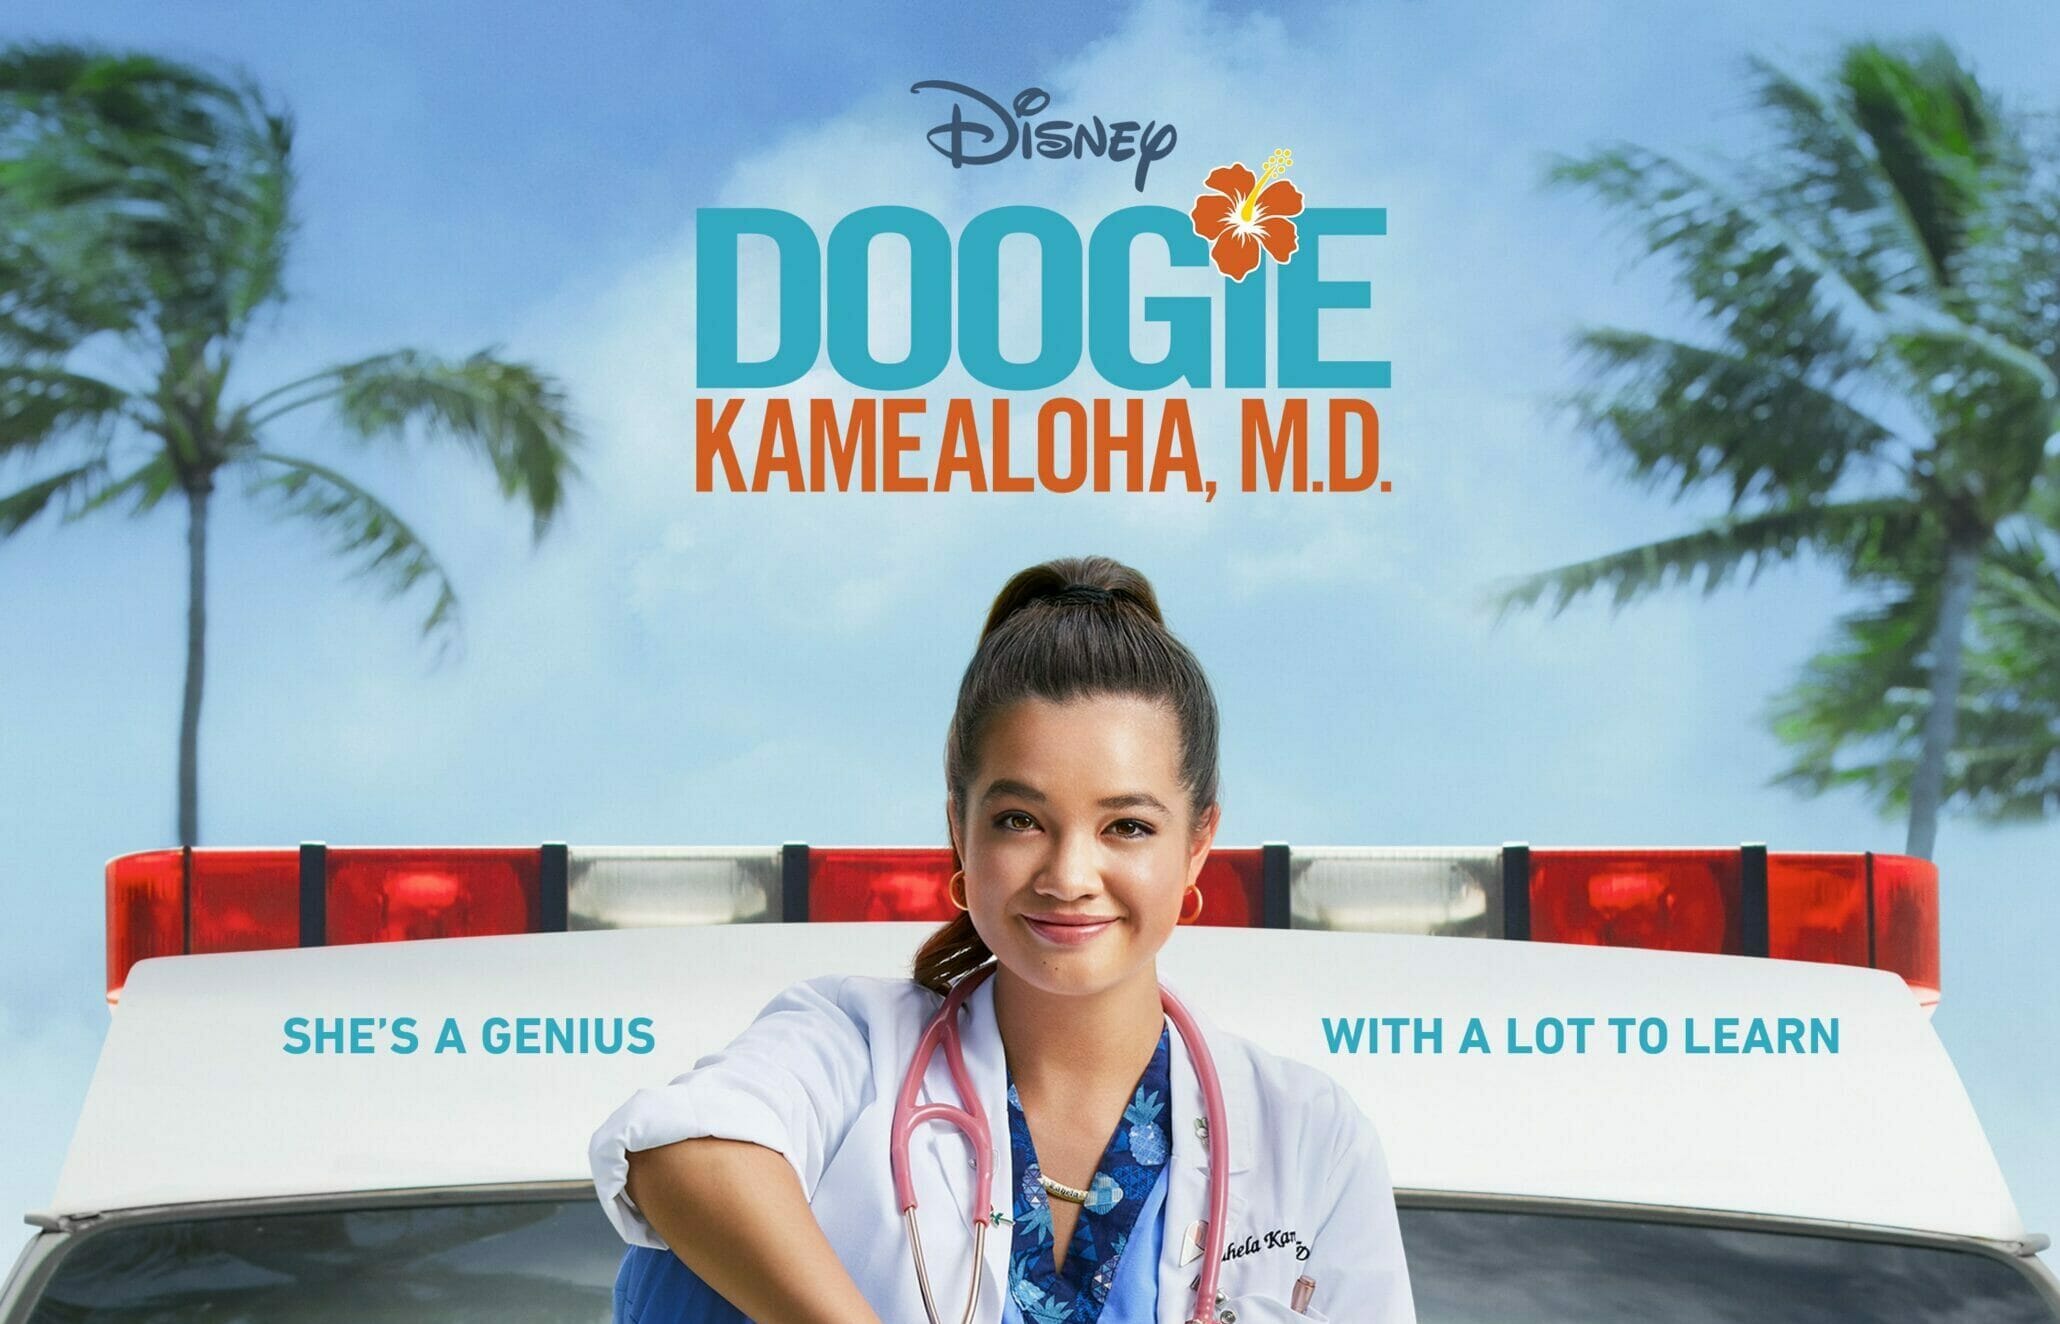 'Doogie Kamealoha, M.D.' Makes Great 'Doogie Howser' Reboot